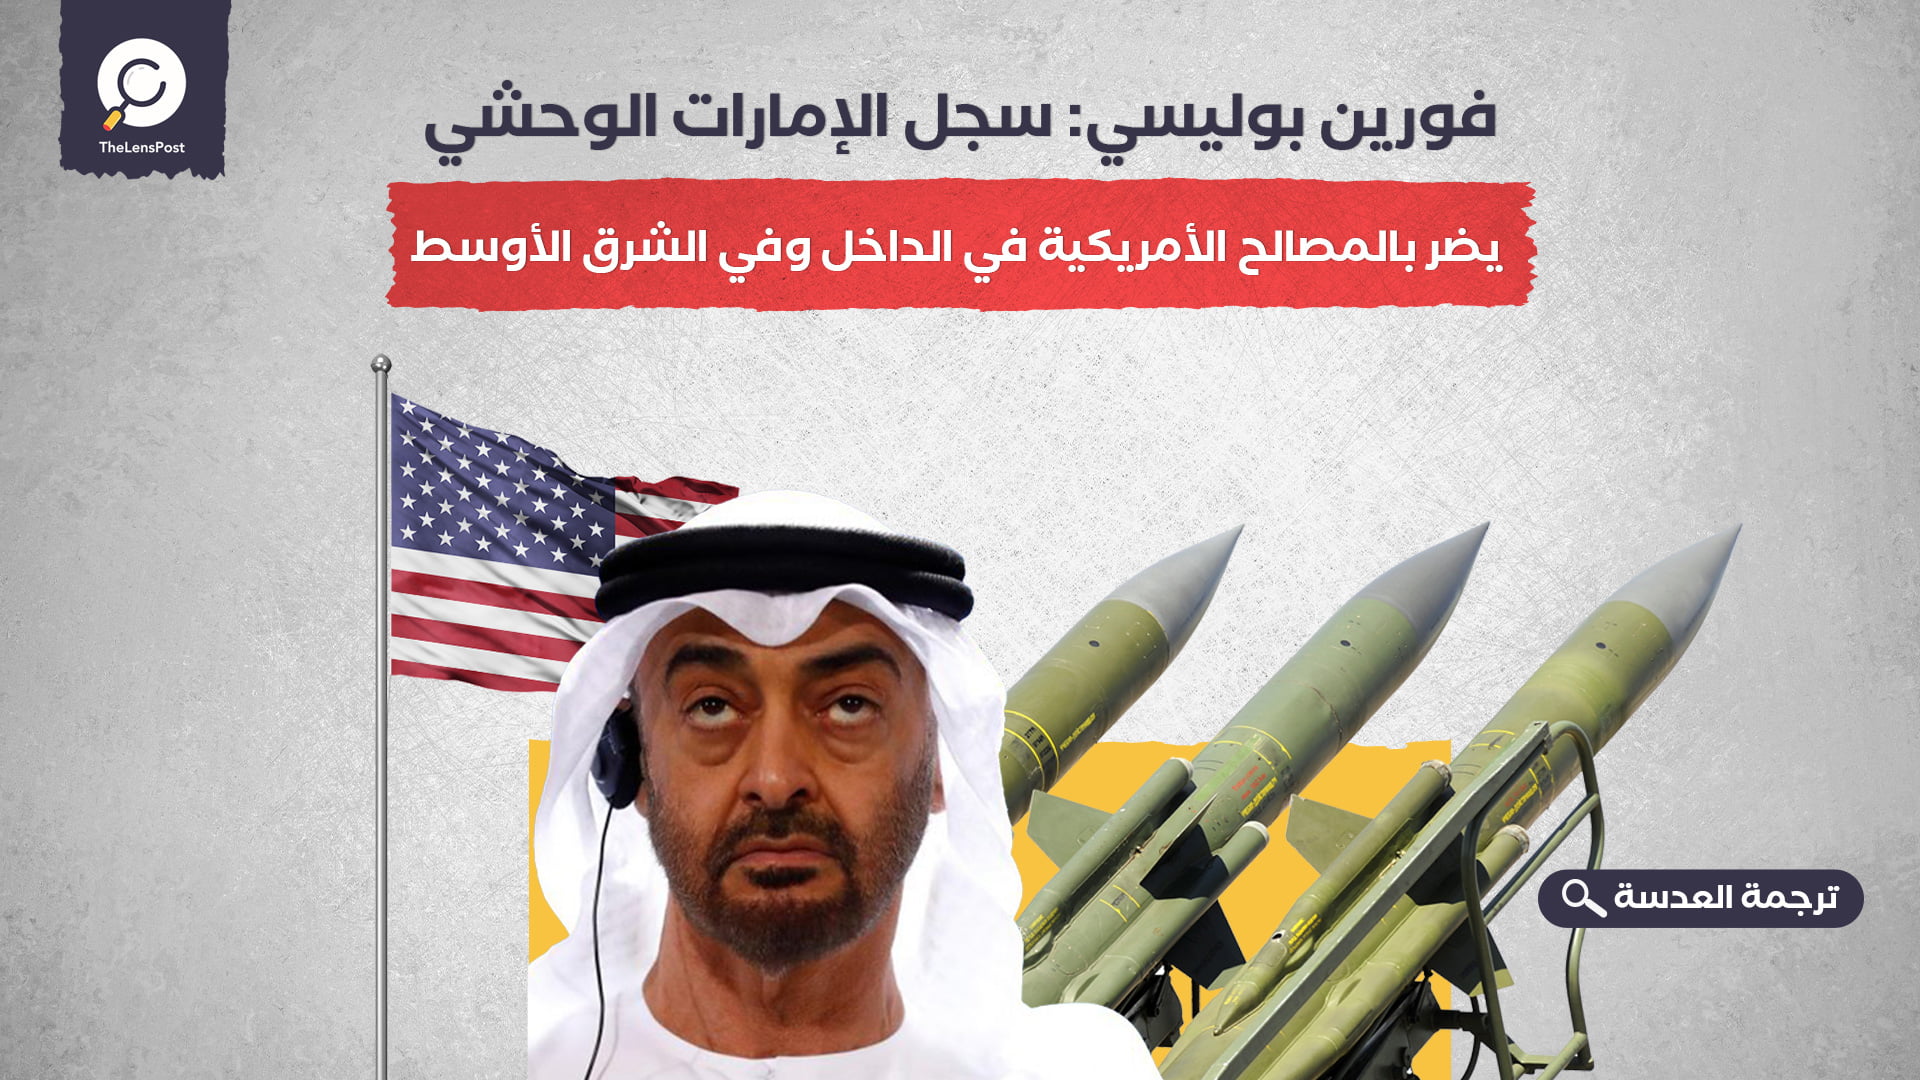  فورين بوليسي: سجل الإمارات الوحشي يضر بالمصالح الأمريكية في الداخل وفي الشرق الأوسط